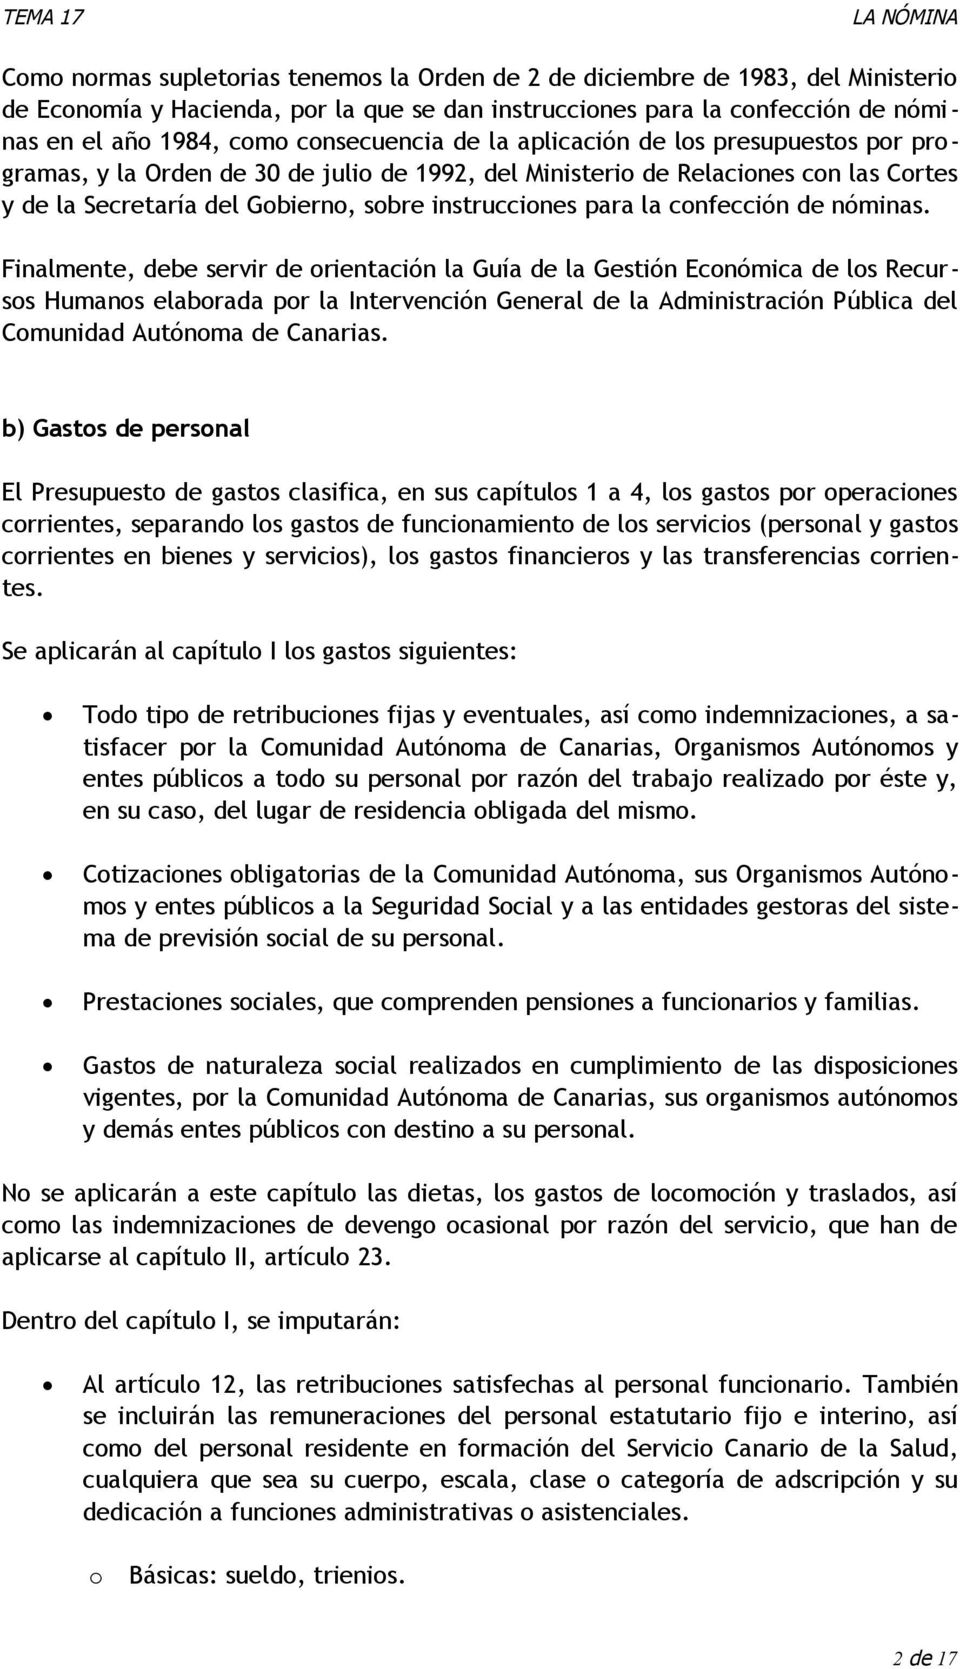 Finalmente, debe servir de rientación la Guía de la Gestión Ecnómica de ls Recurss Humans elabrada pr la Intervención General de la Administración Pública del Cmunidad Autónma de Canarias.